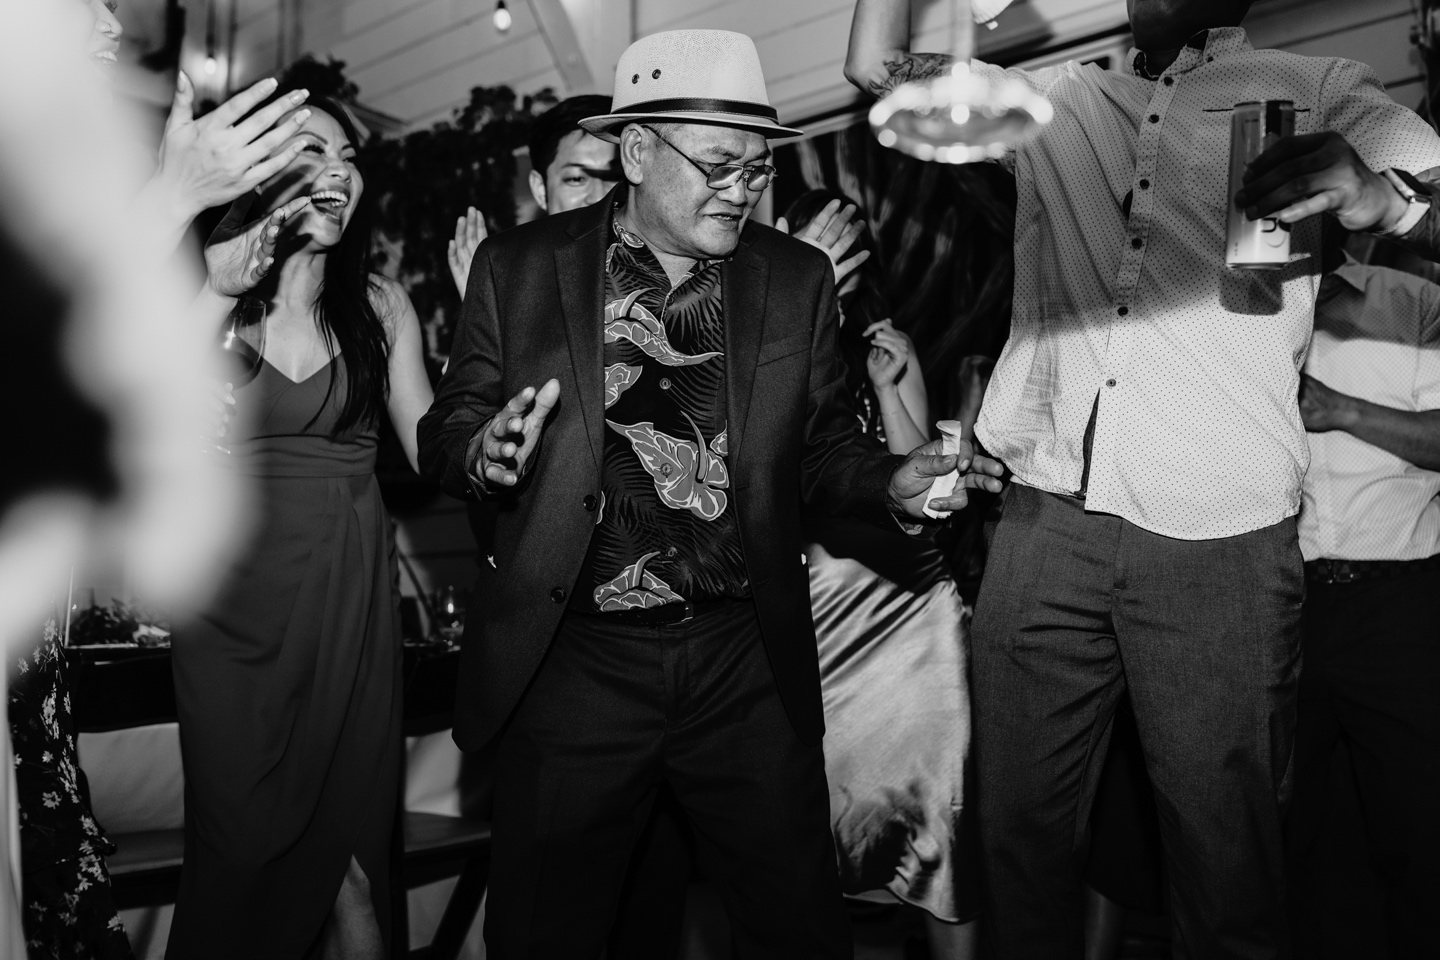 Wedding guests dancing at Prickly Pear wedding reception in Sacramento, CA.